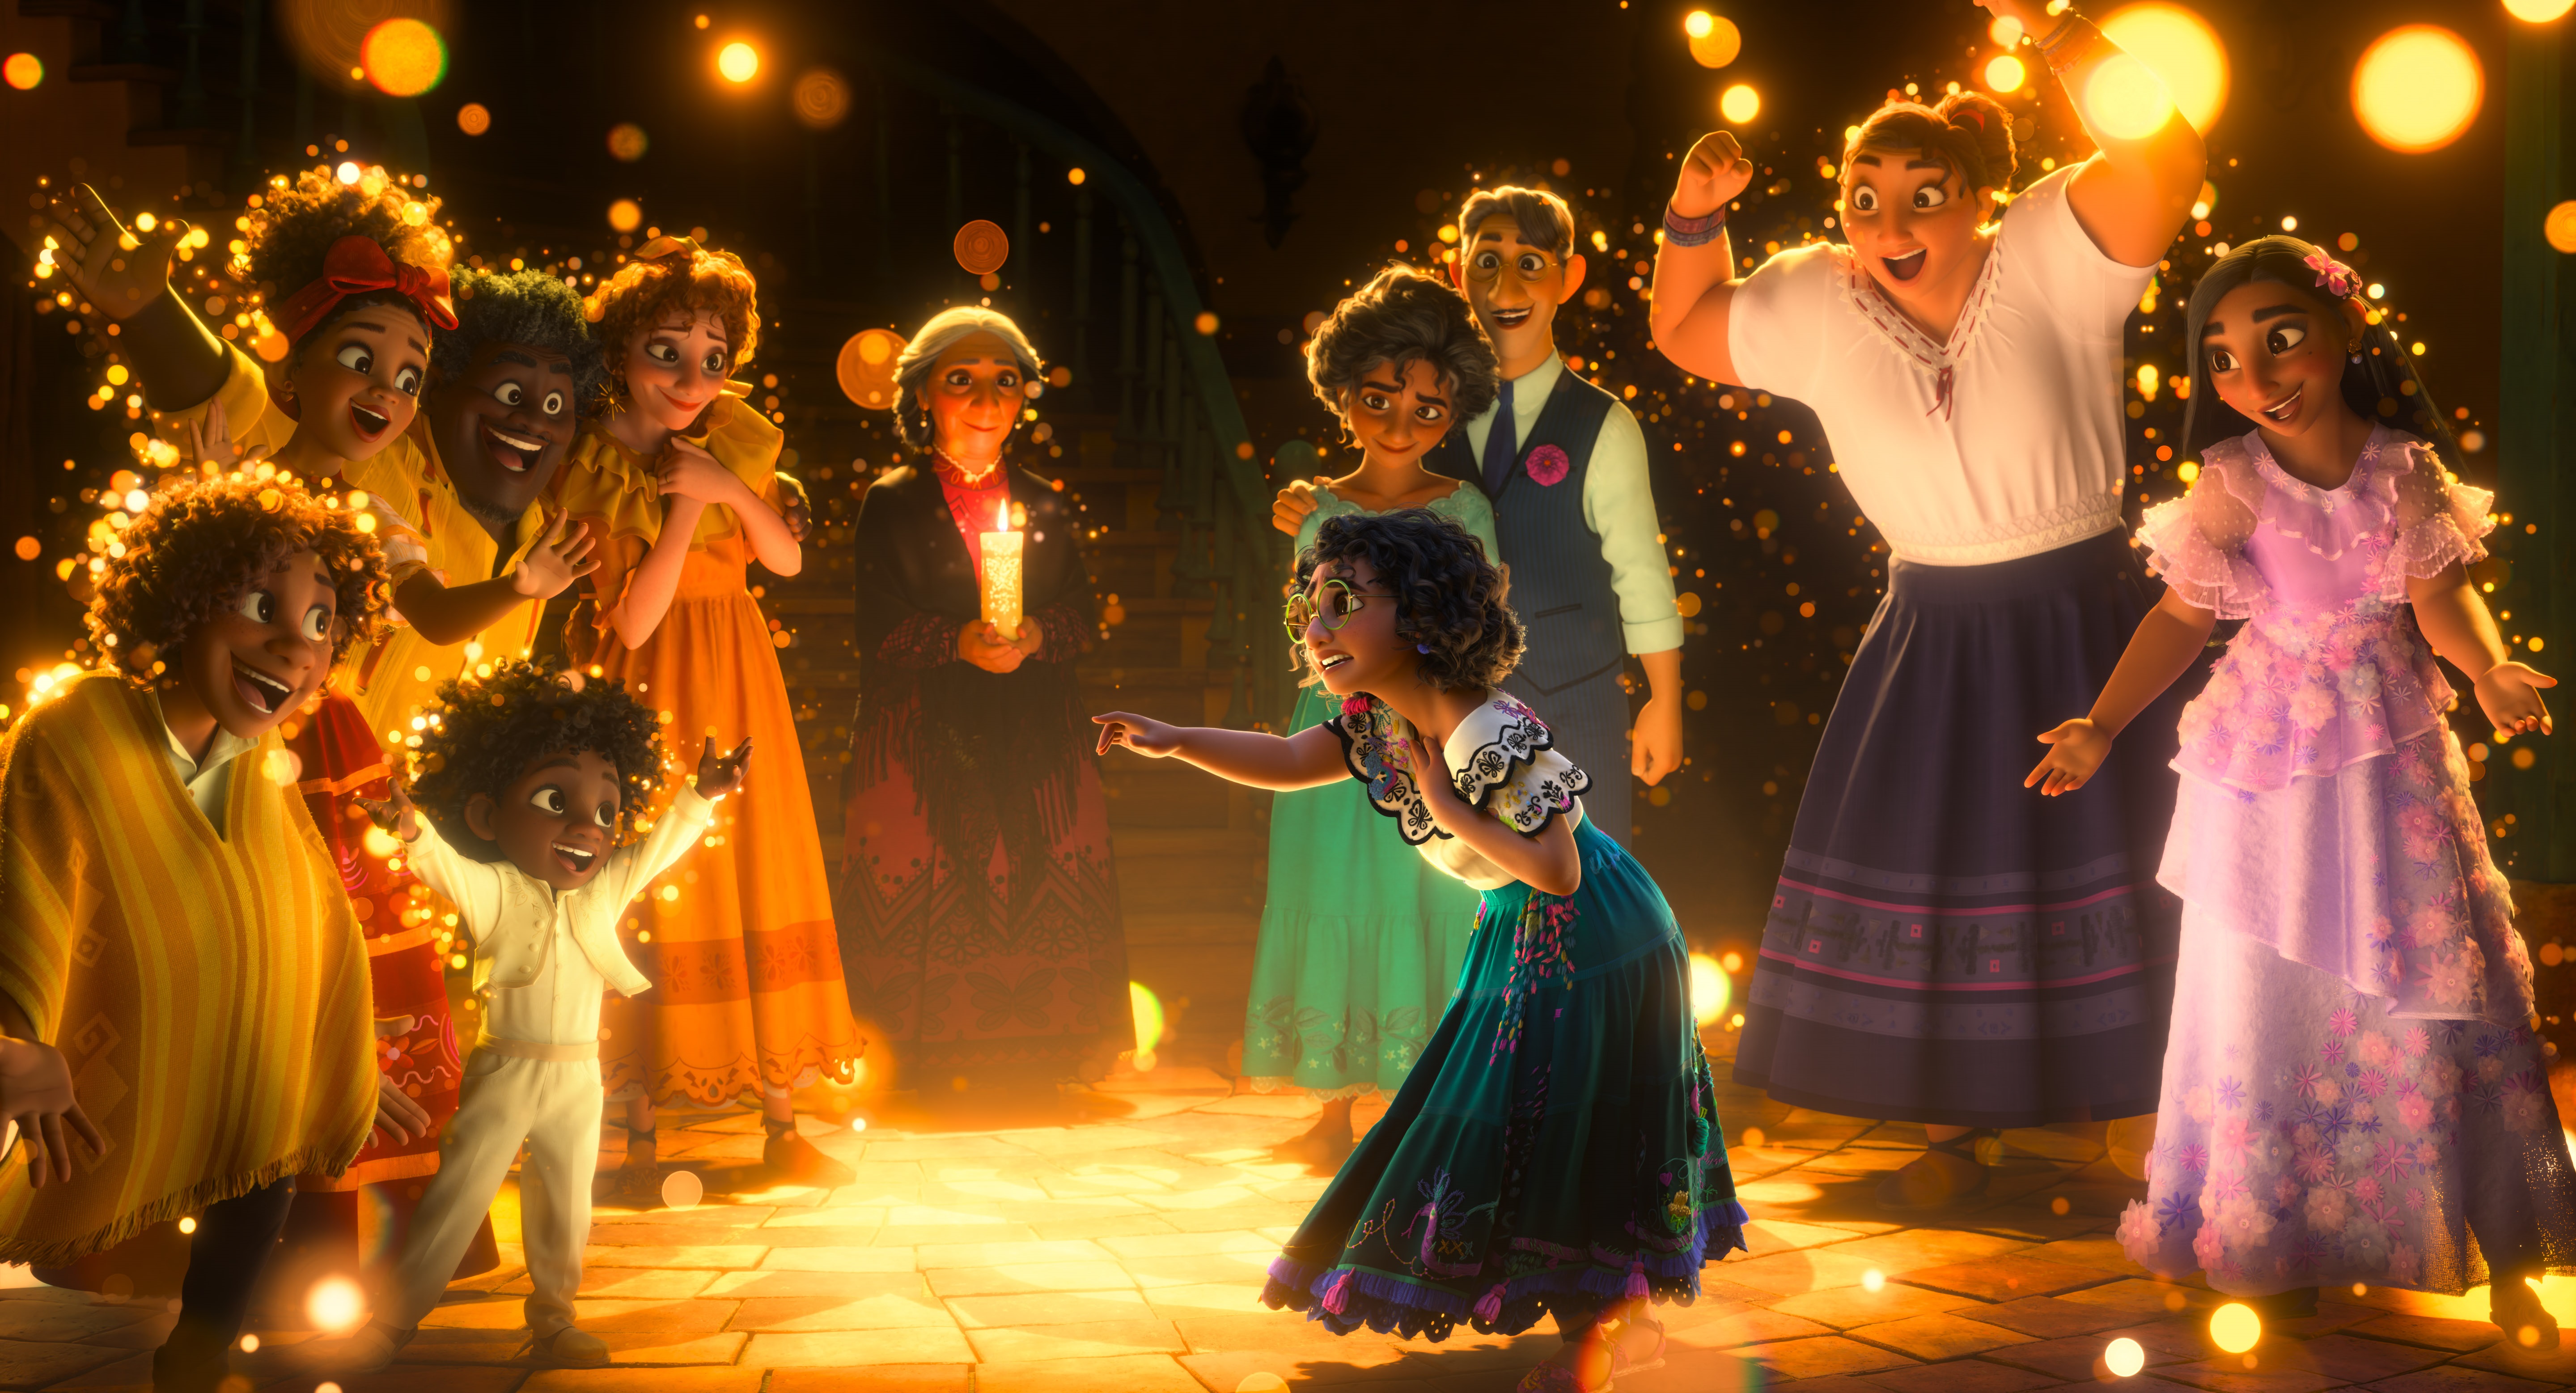 24-11-2021 Disney viaja a la Colombia del realismo mágico en 'Encanto', un clásico para "mostrar la diversidad de Latinoamérica"
CULTURA
DISNEY
